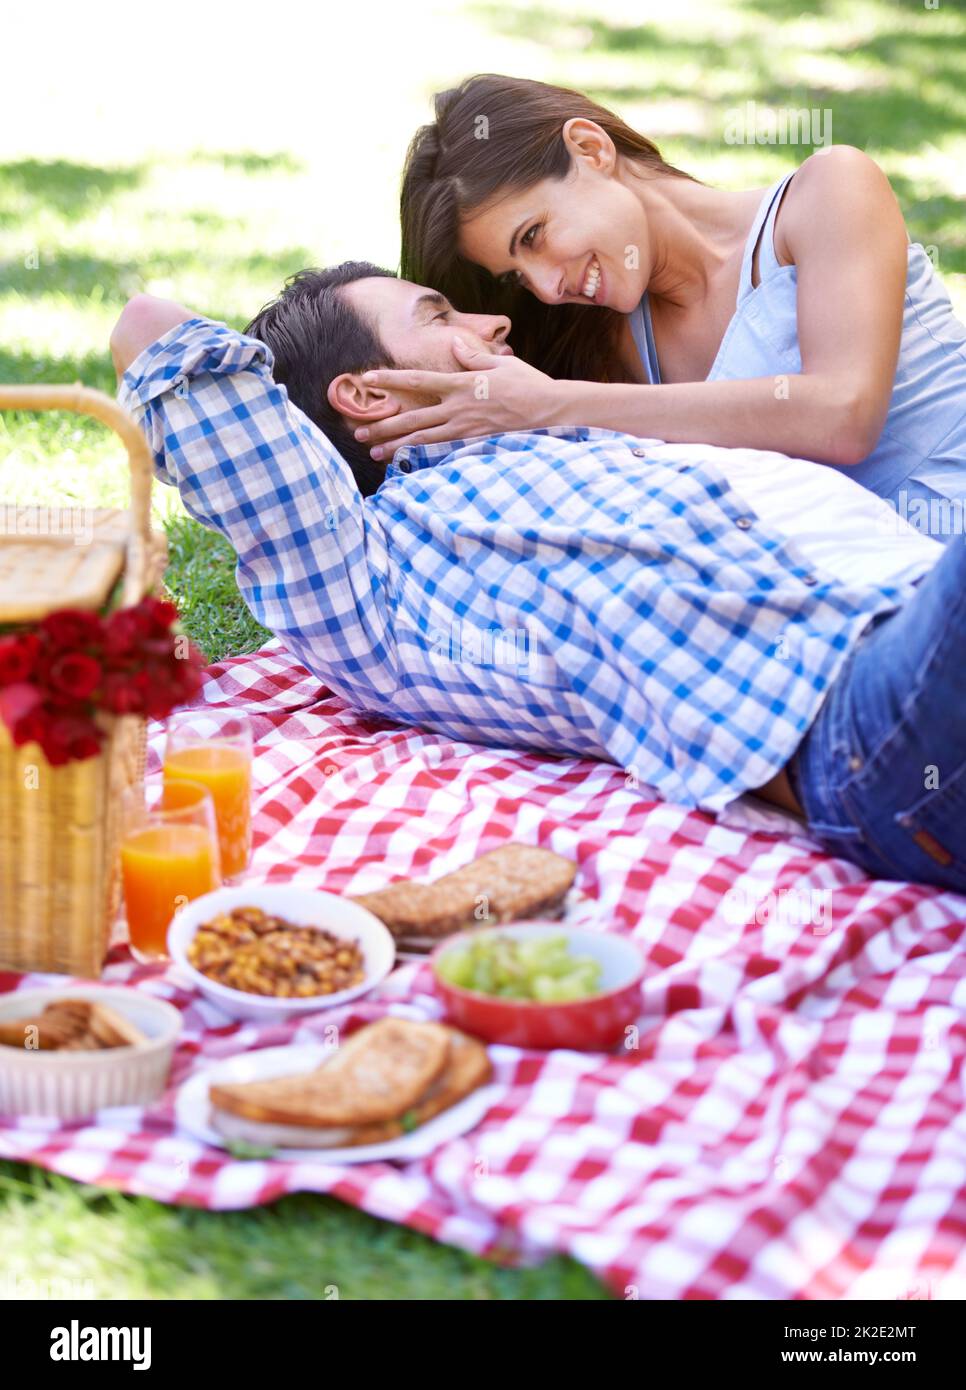 Perfektes Picknick. Ein glückliches junges Paar genießt ein Picknick in der Sommersonne. Stockfoto